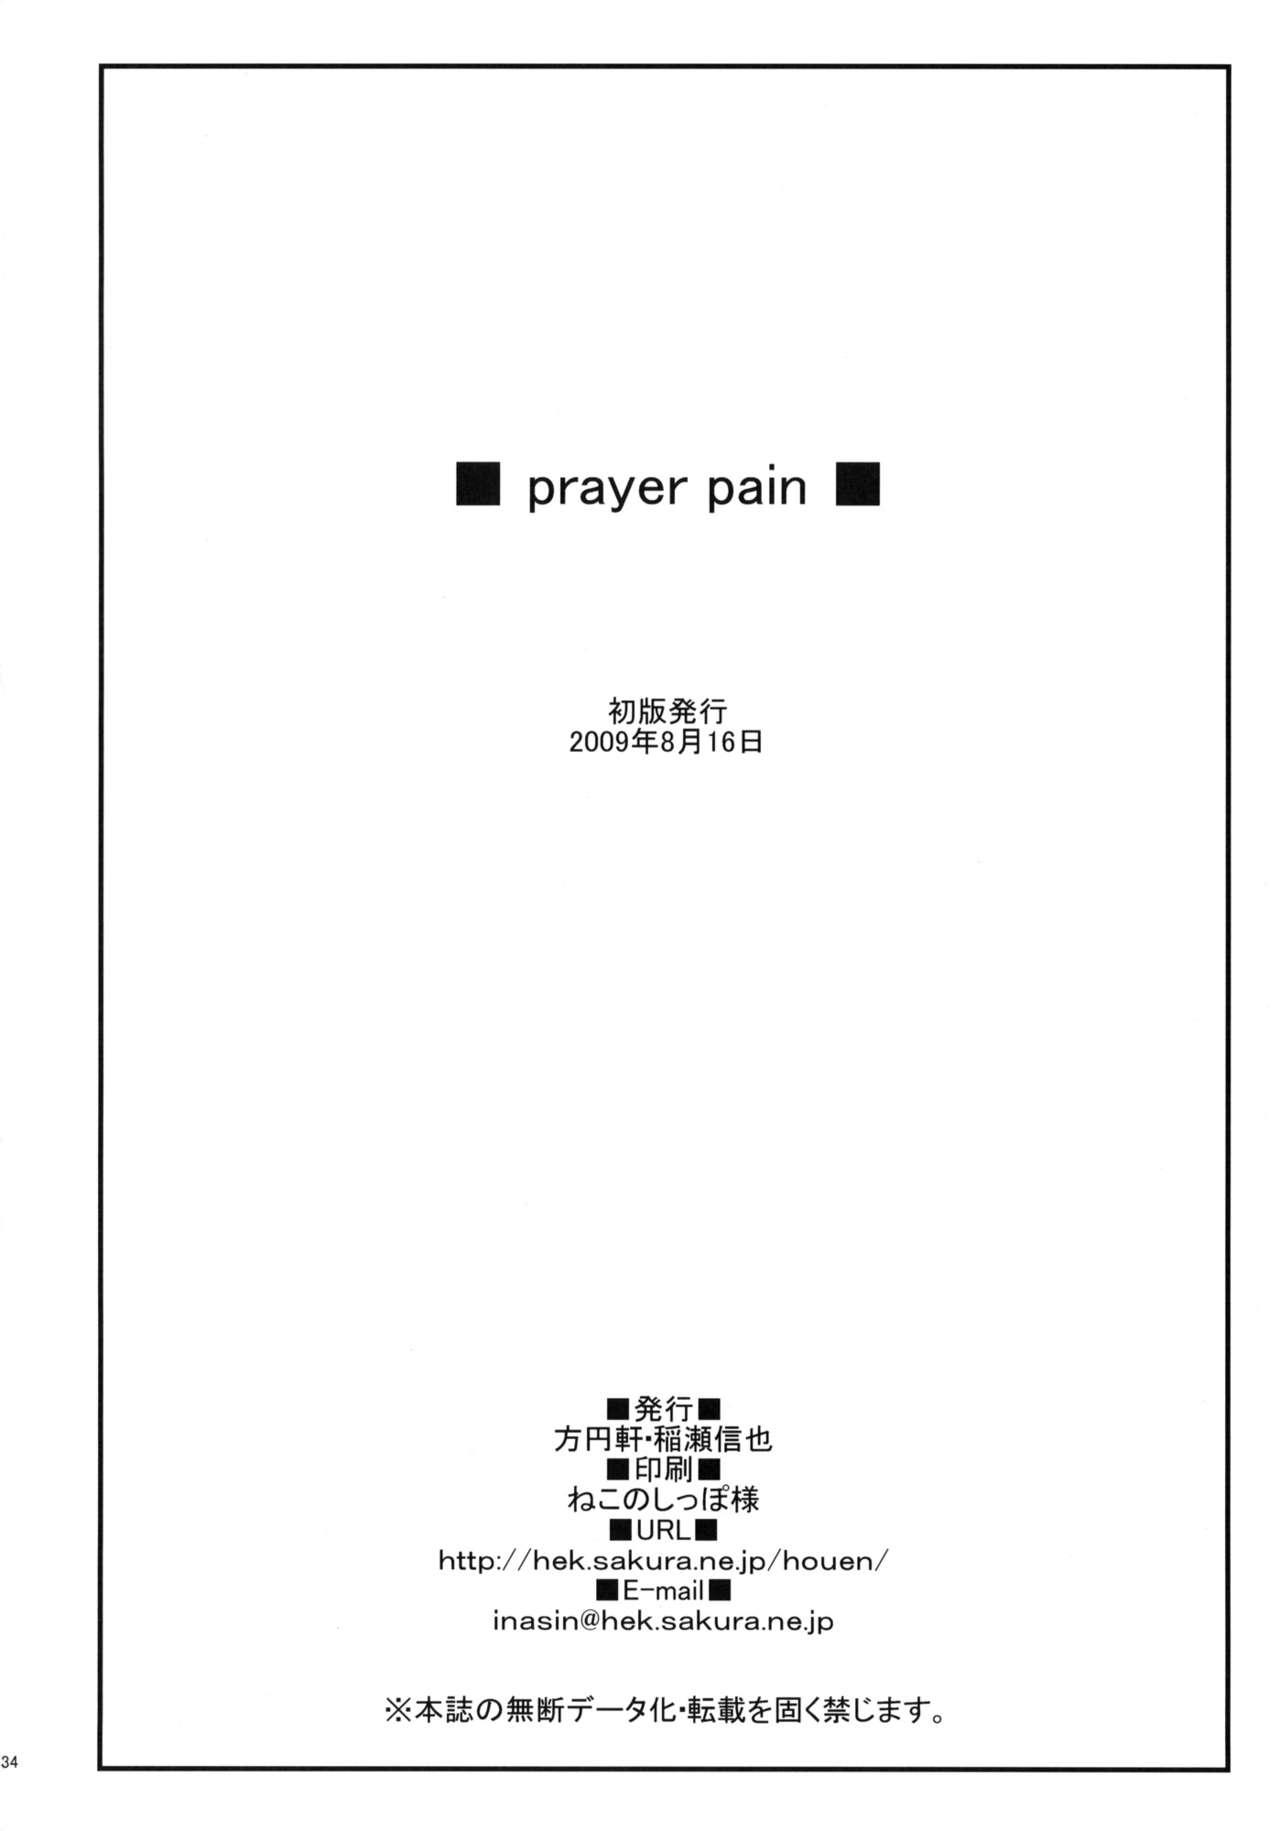 prayer pain 33